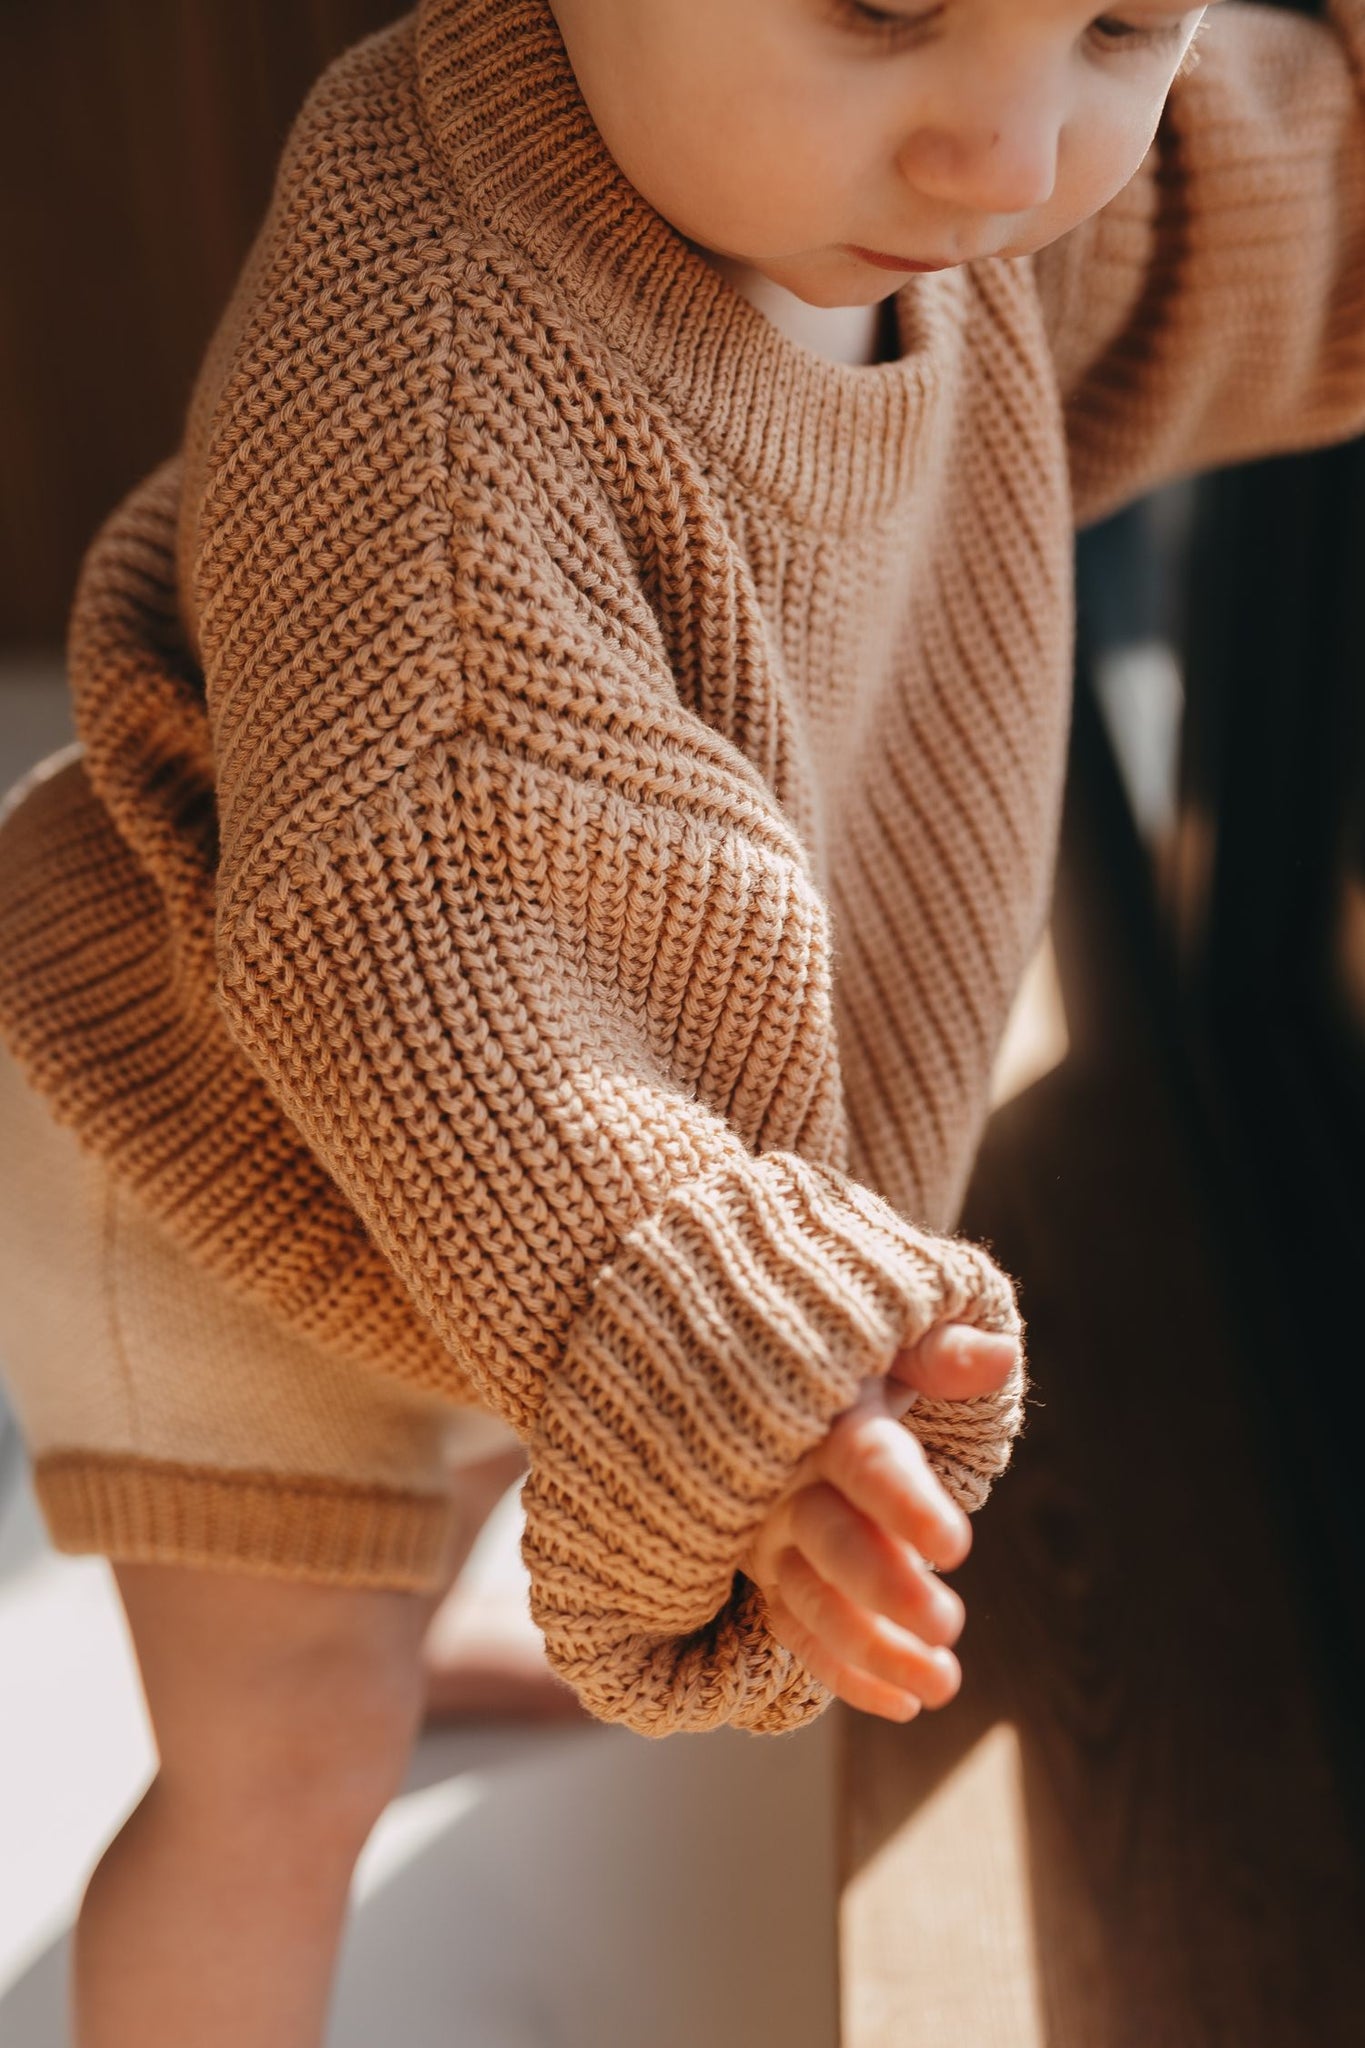 Organic Basic Knit Oversized Sweater - Fawn